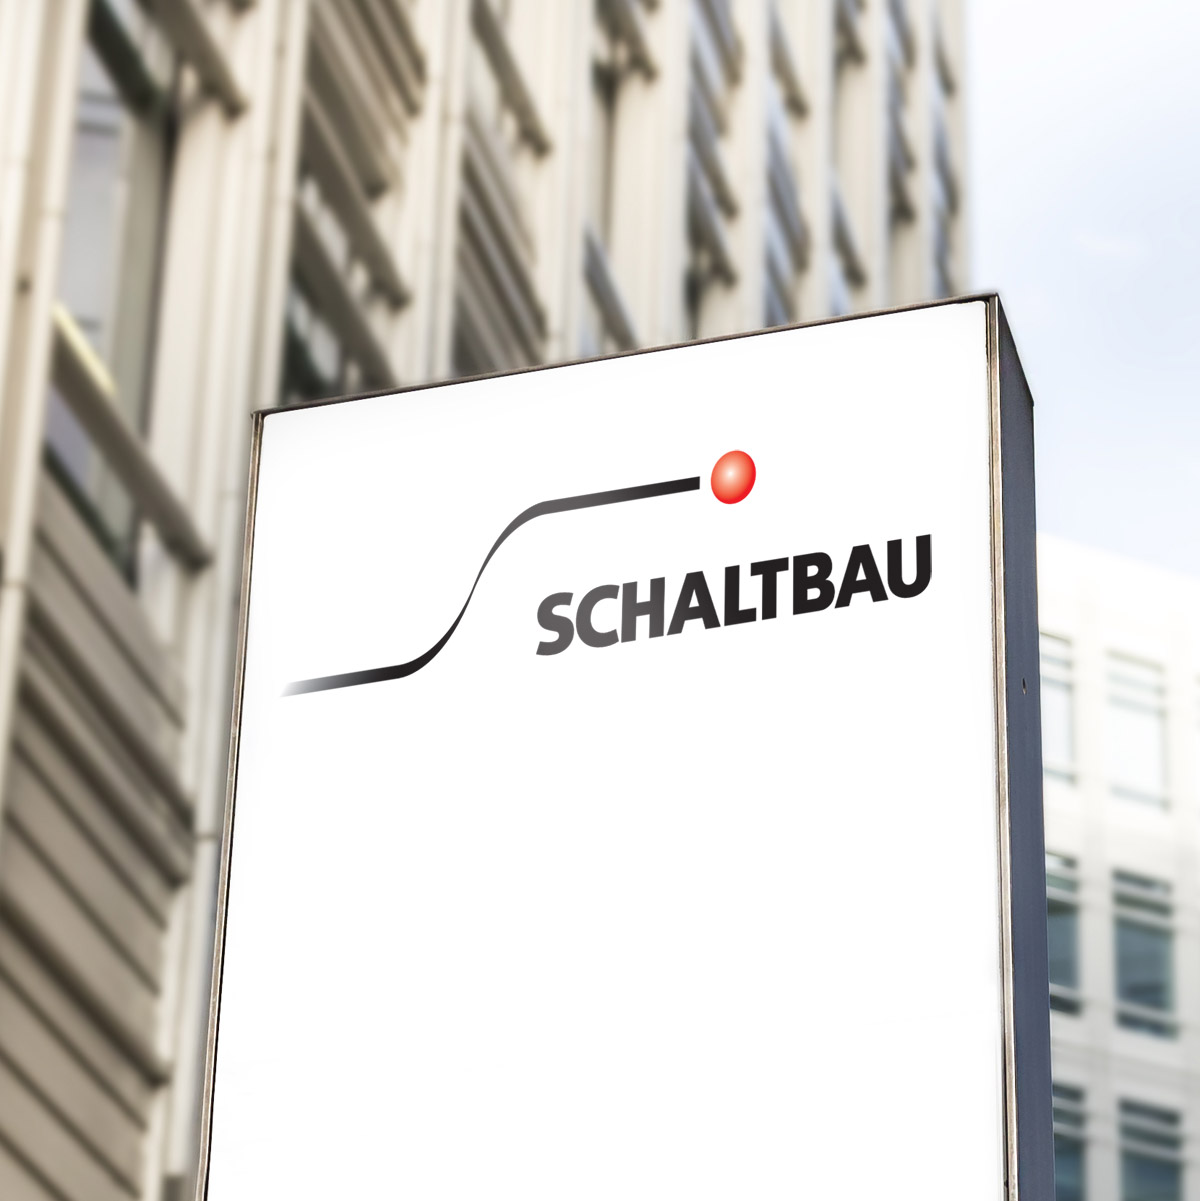 Schaltbau Holding Ag